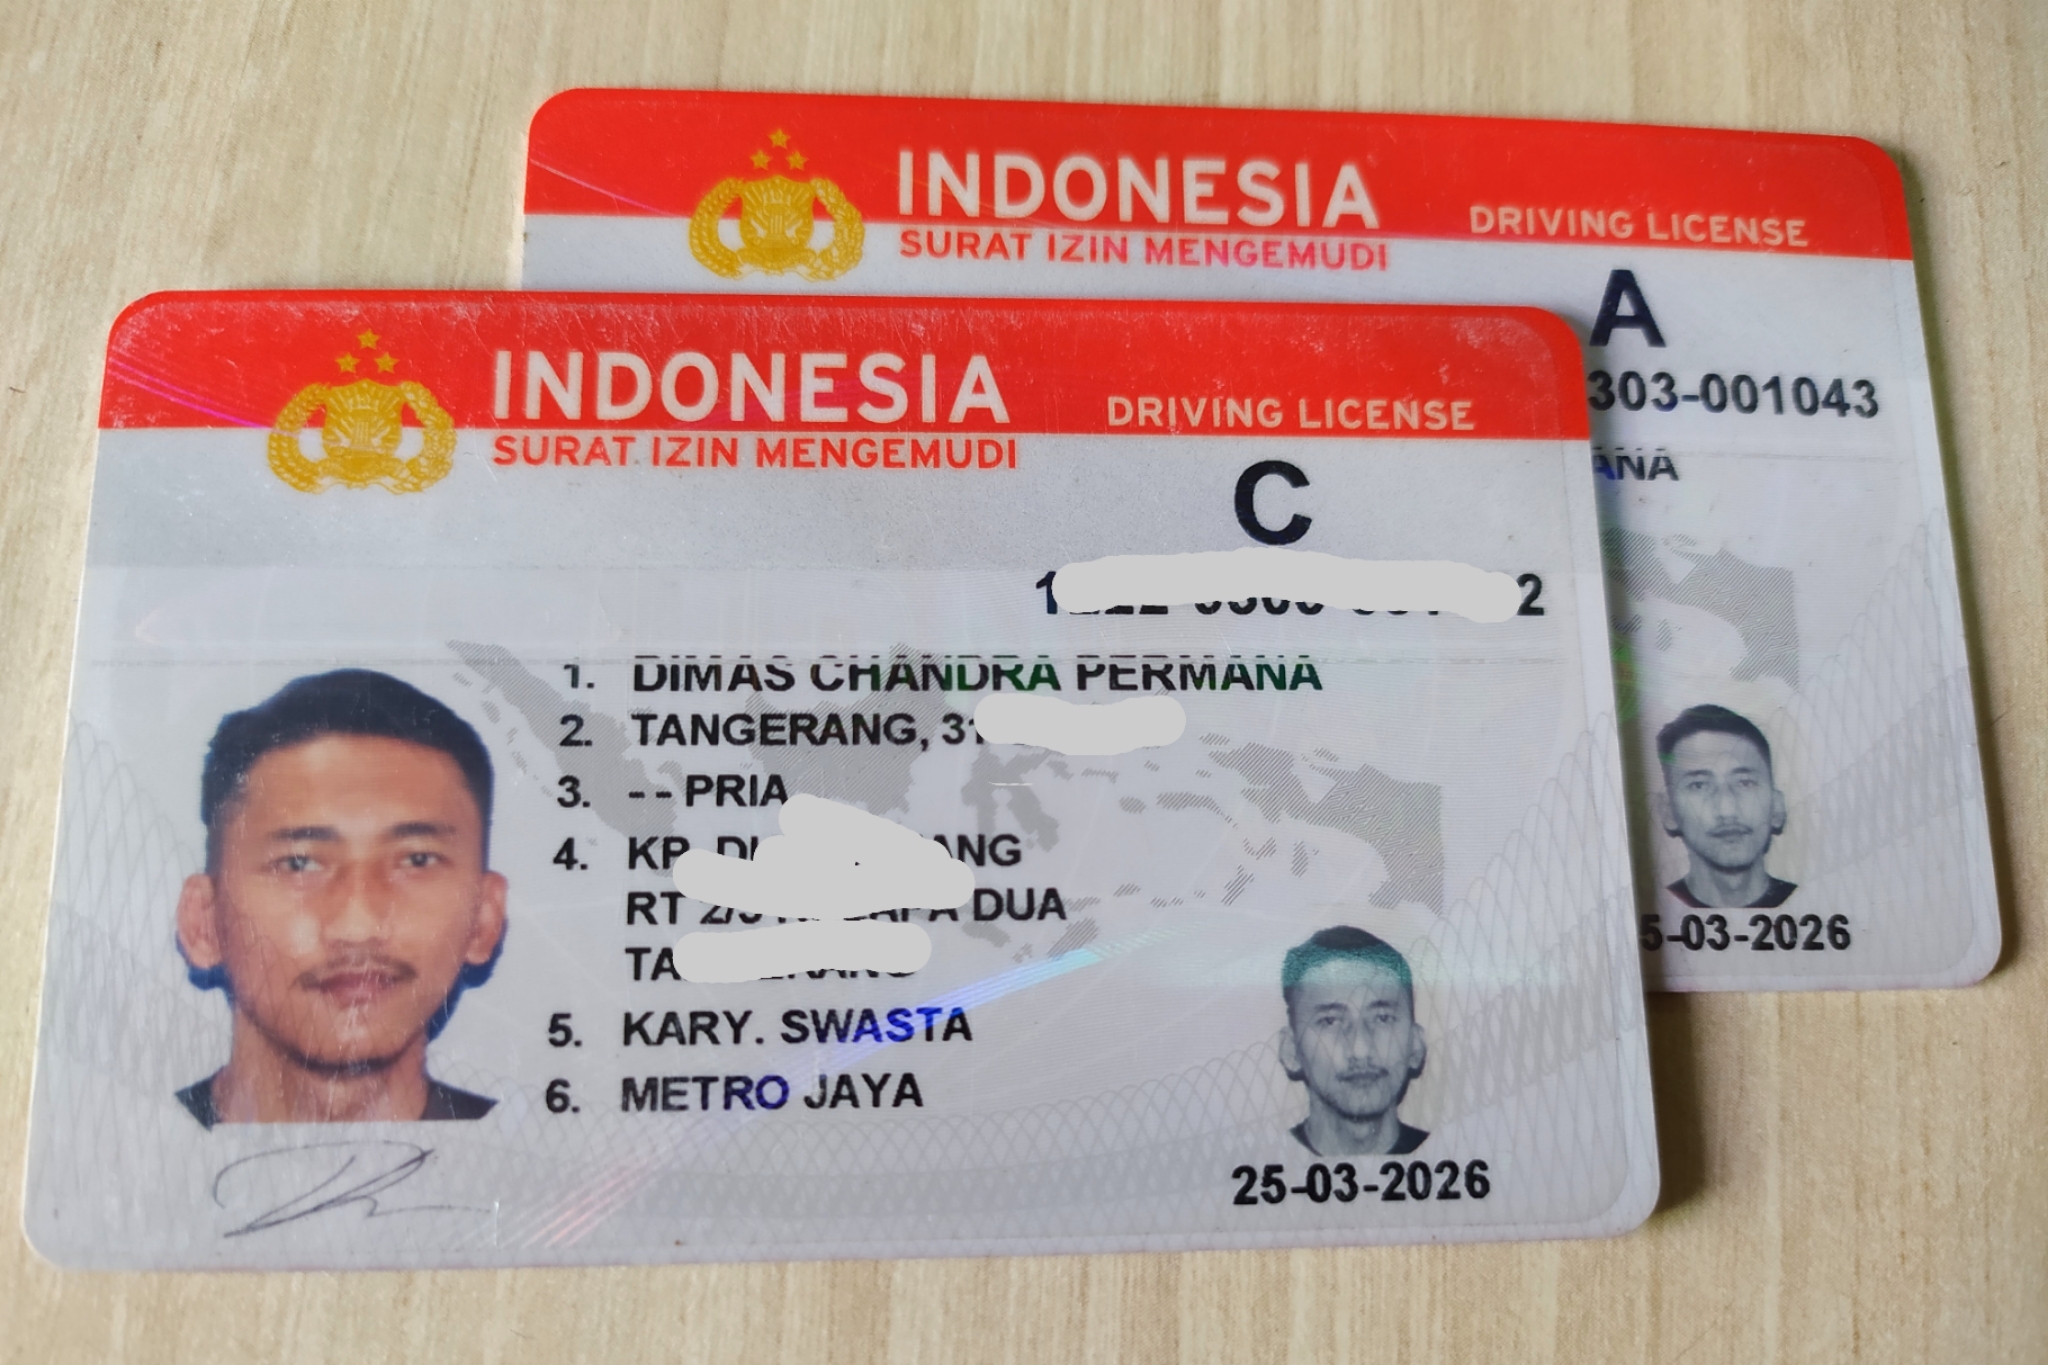 Lokasi SIM Keliling Jakarta, Bogor, Depok, Tangerang-Bogor Hari Jumat, Intip Biaya Perpanjang SIM C dan SIM A